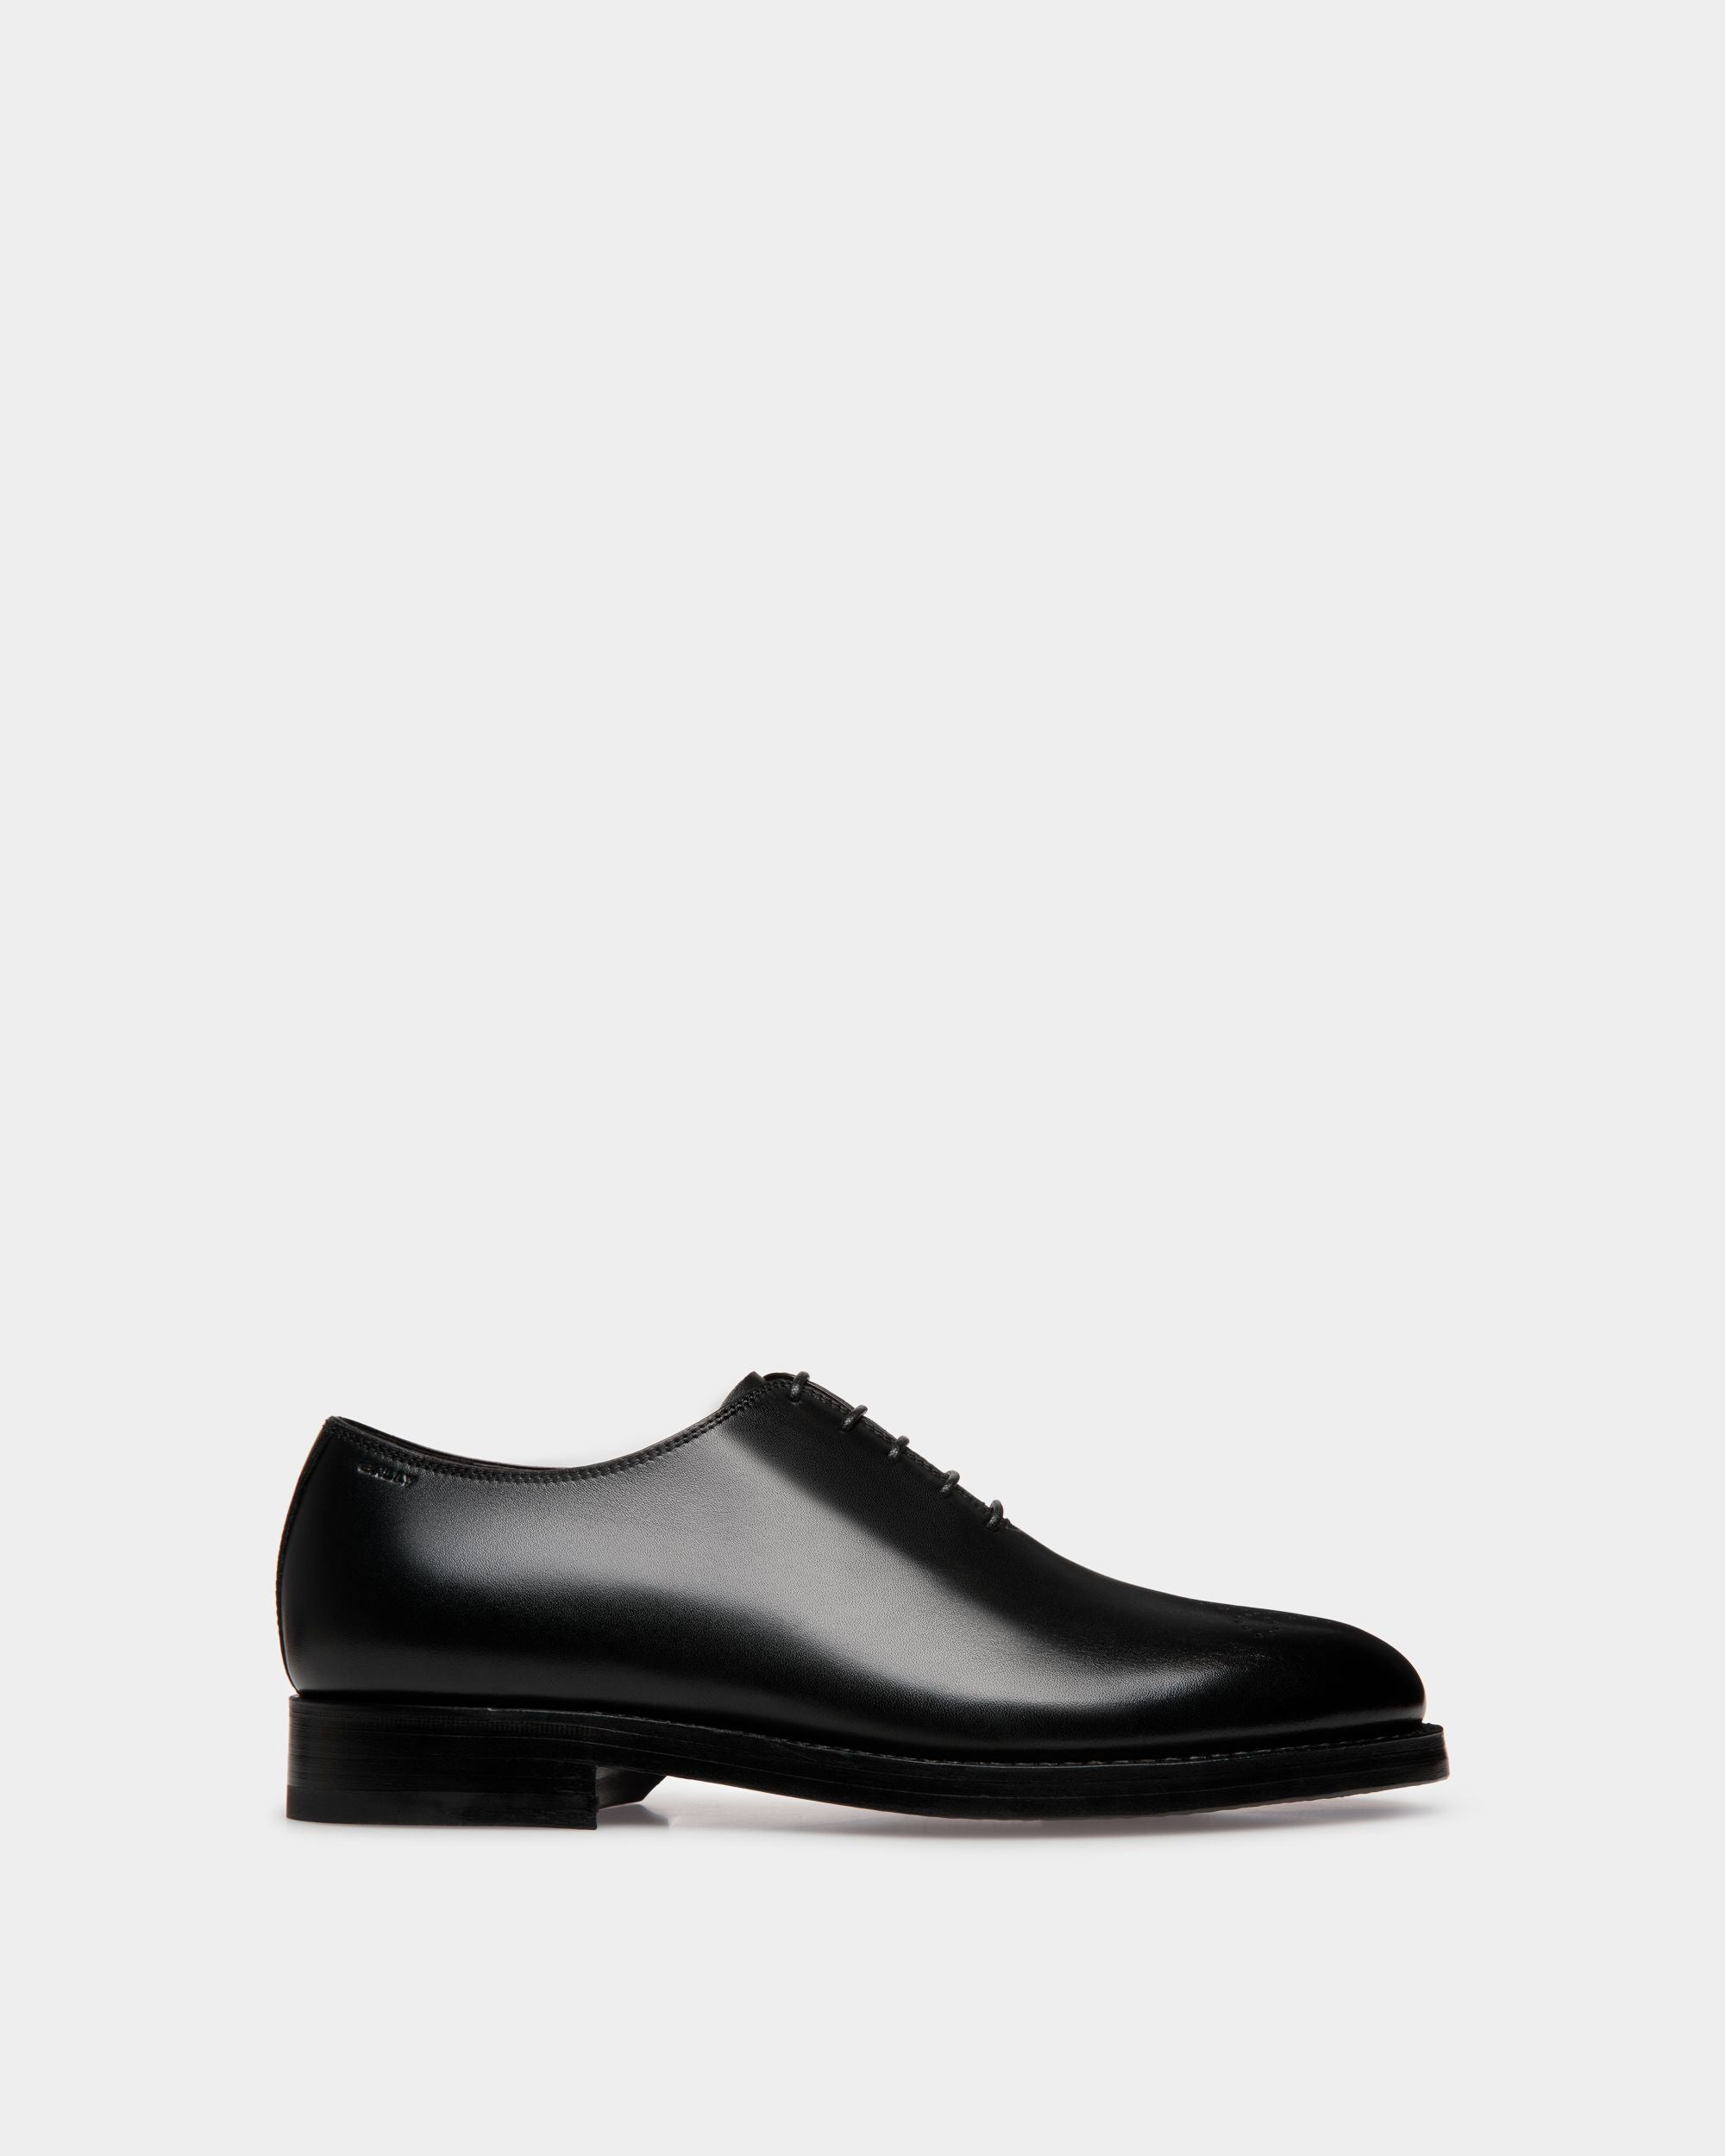 Schoenen | Oxford-Schuh für Herren aus schwarzem Leder | Bally | Still Life Seite